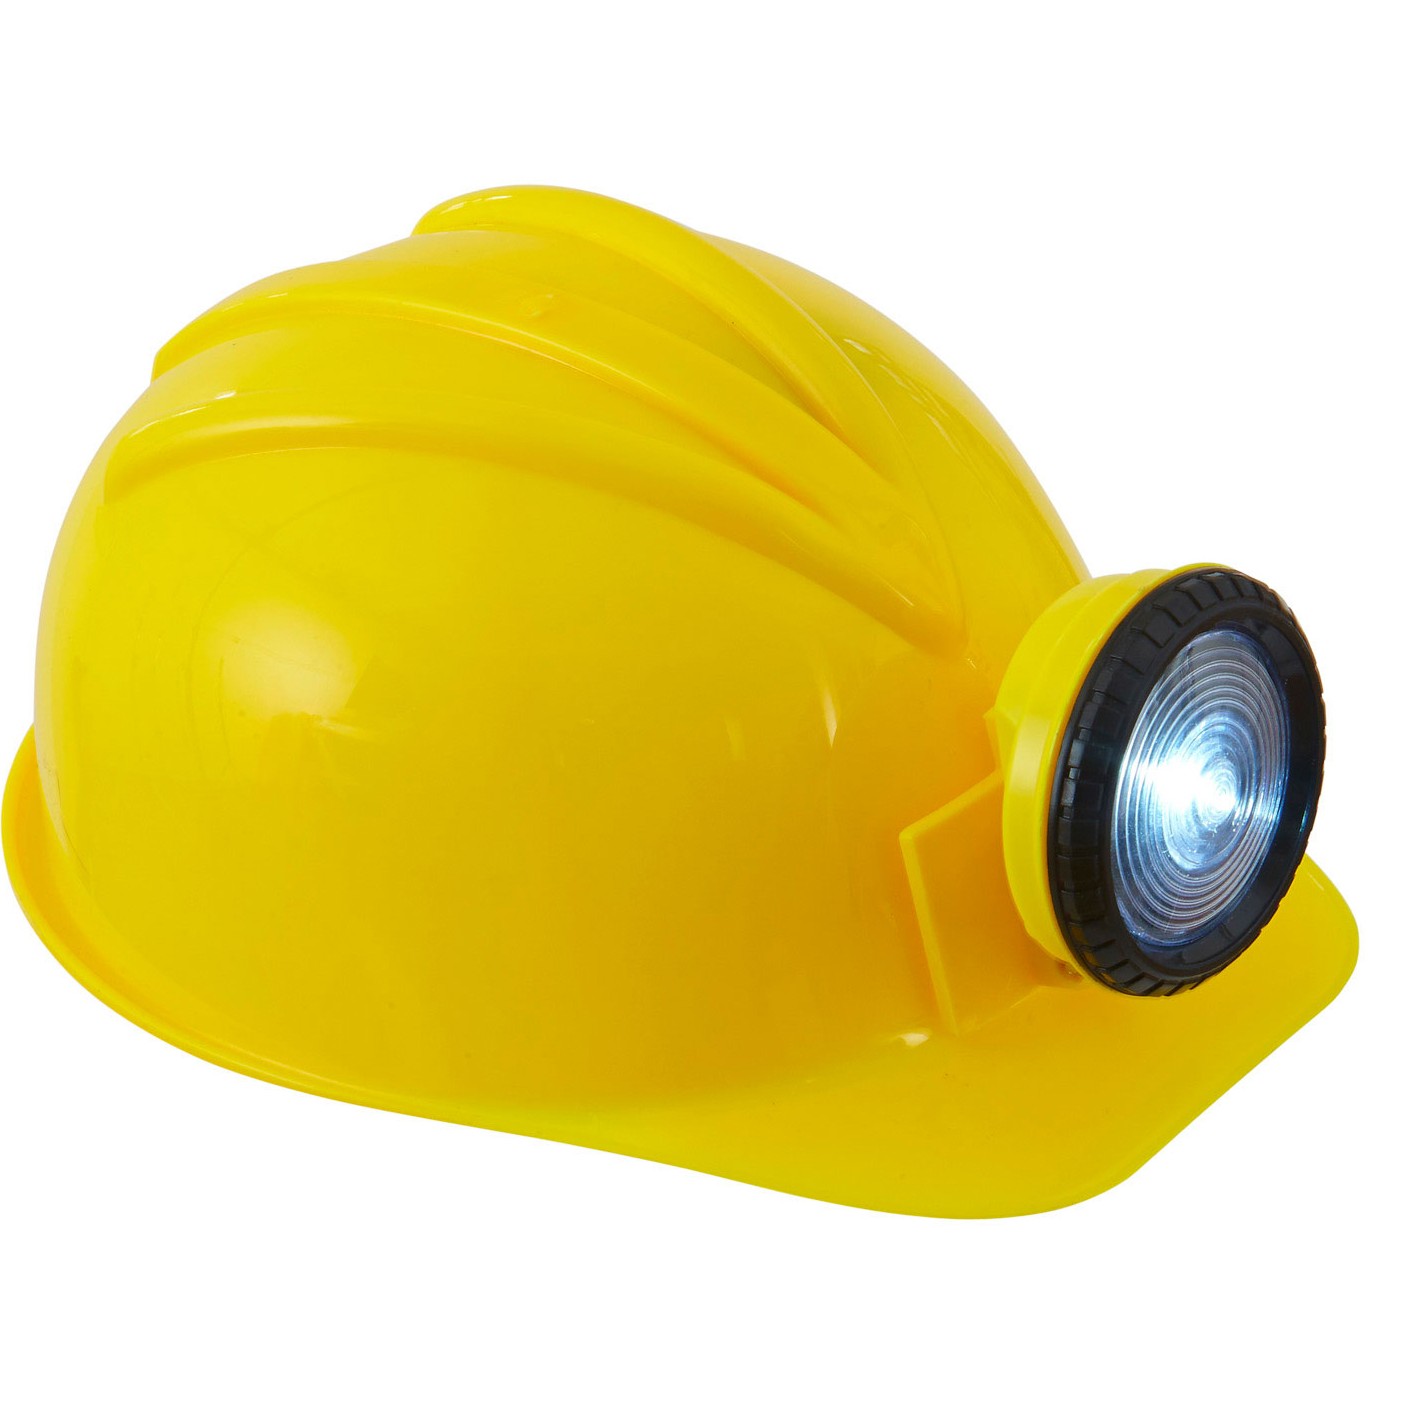 Bauarbeiter Helm mit Leuchte